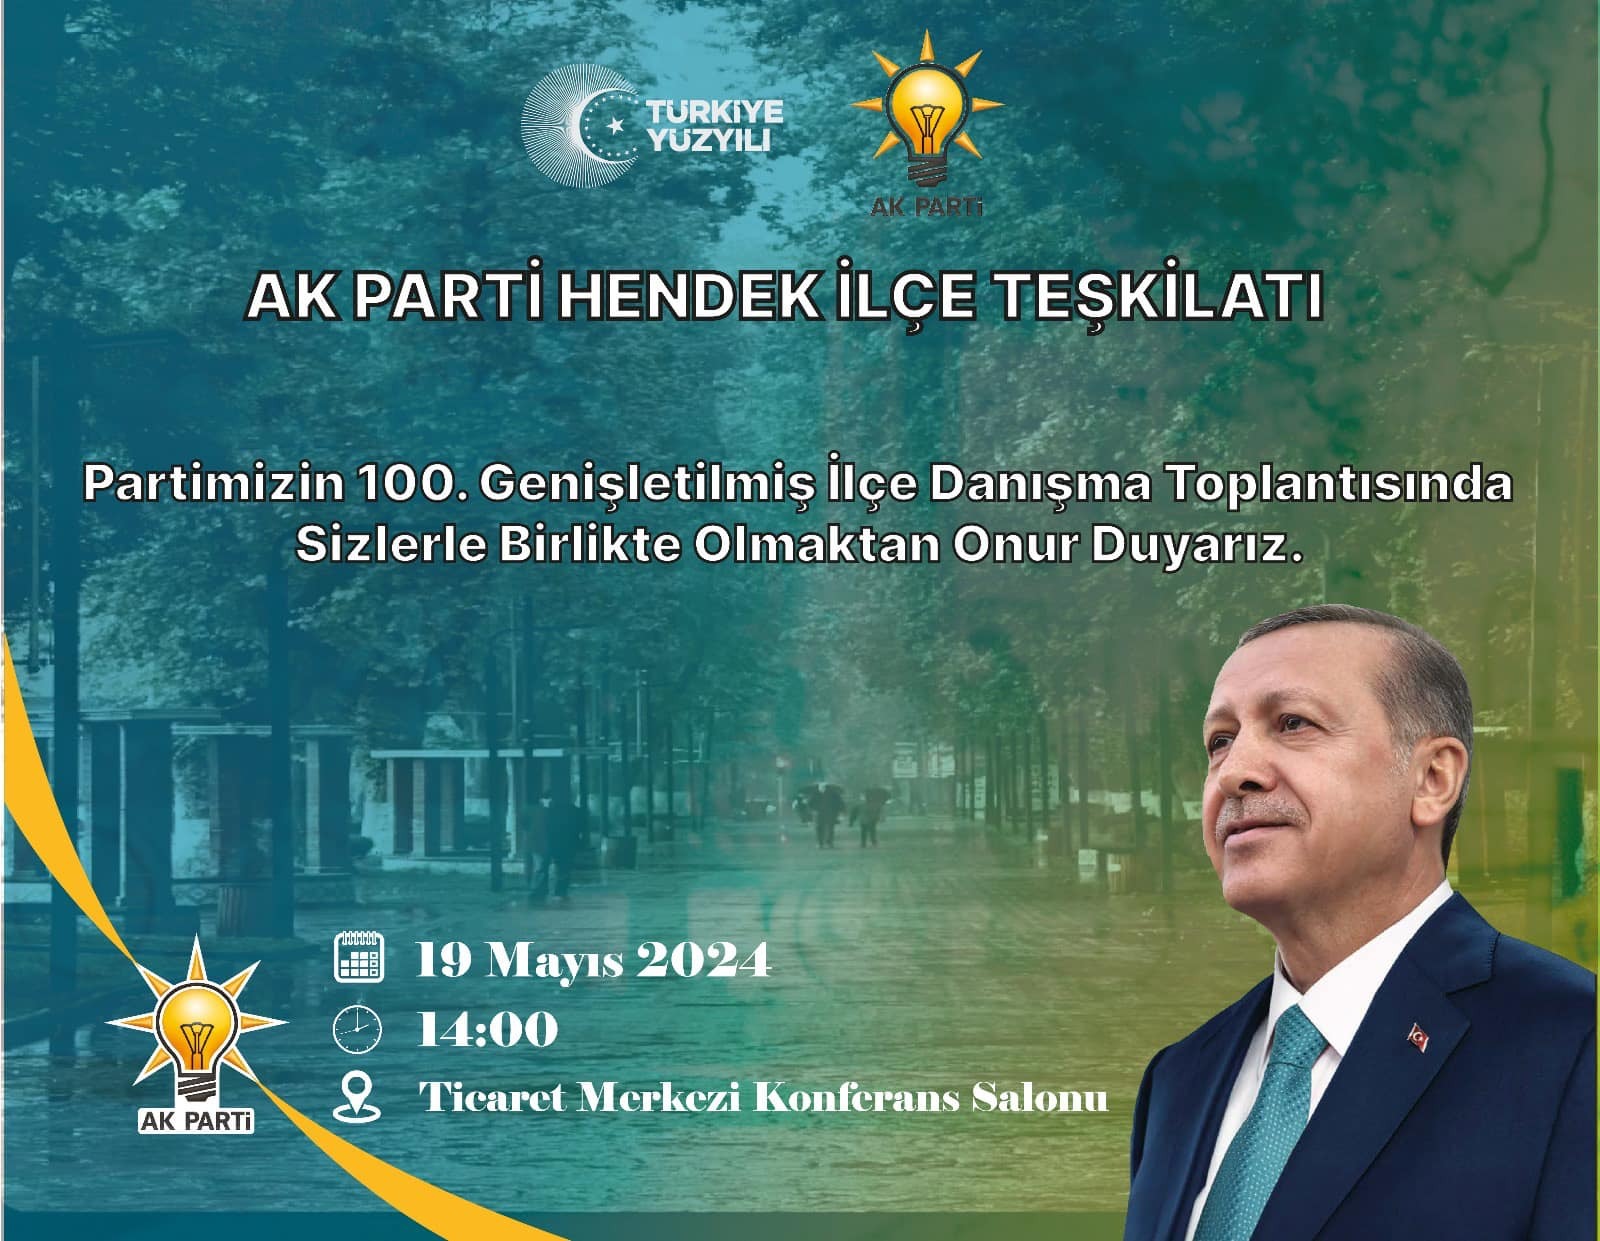 AK Parti Hendek’ten 100. Genişletilmiş İlçe Danışma Toplantısına Davet 